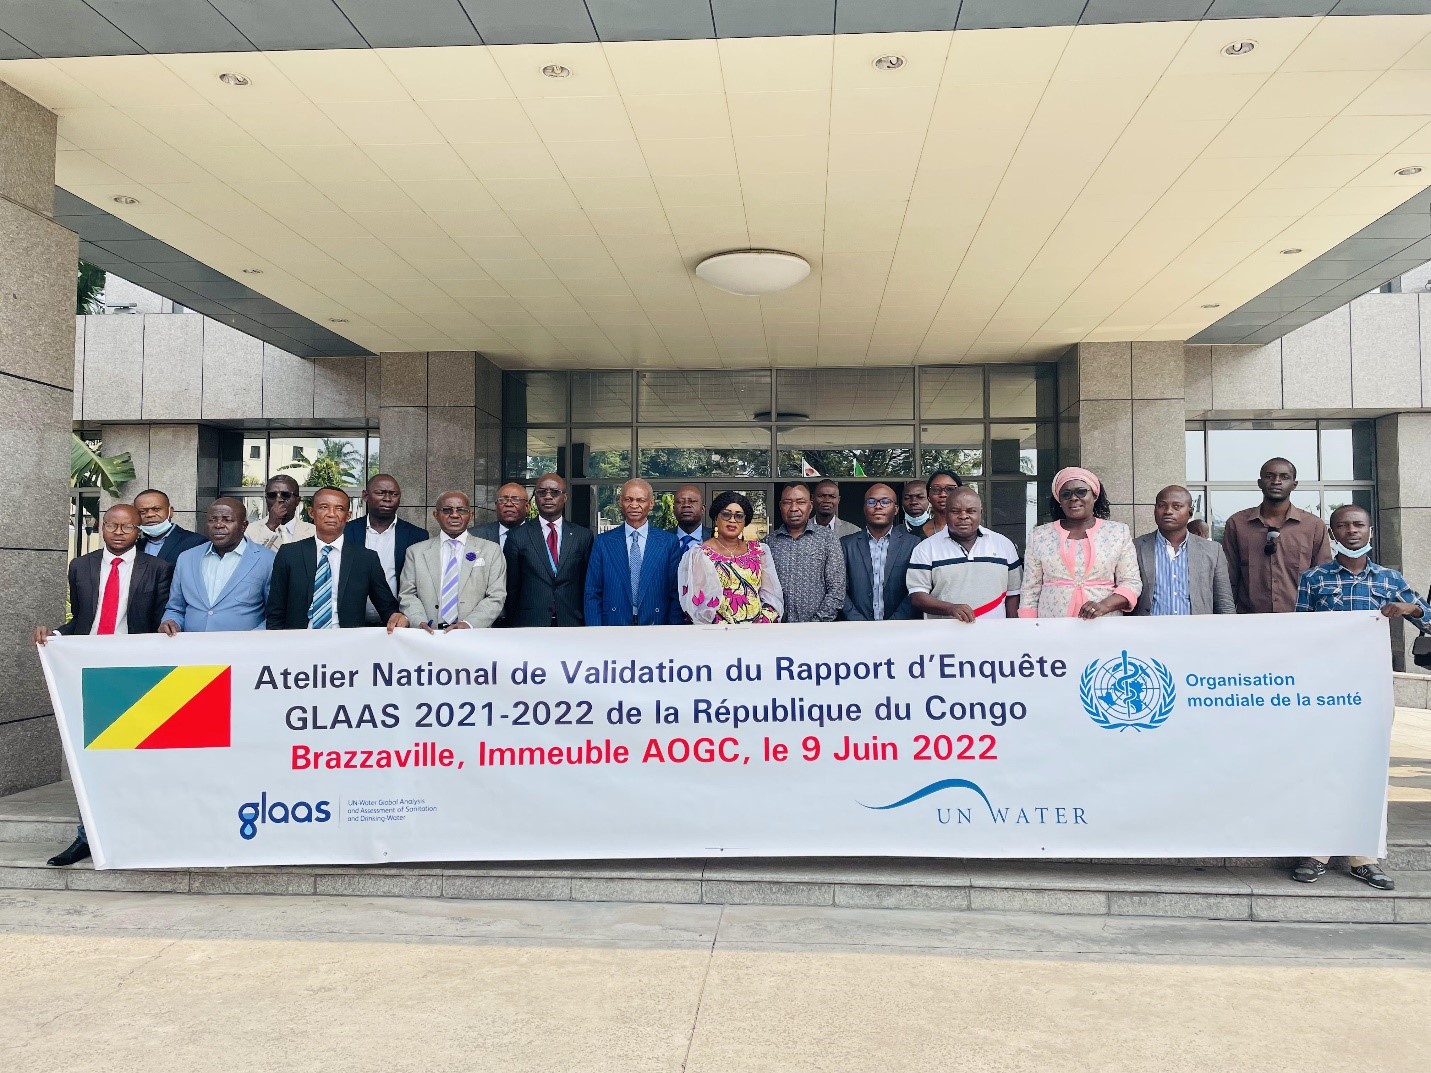 Atelier national de validation du Rapport de l’Enquête GLASS 2021-2022 de la République du Congo